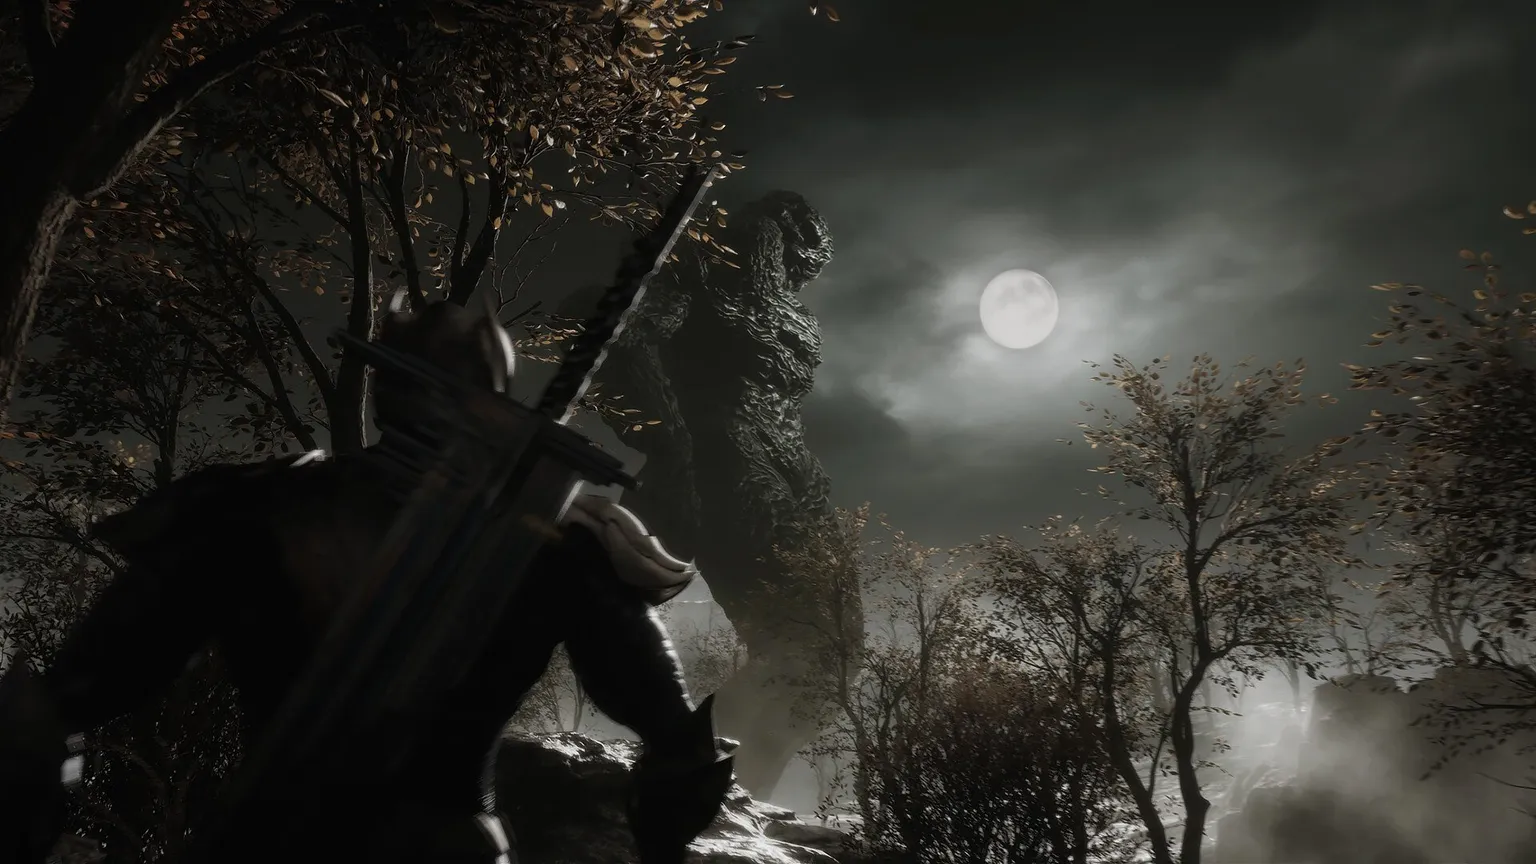 Skærmbillede, der viser karakter med sværd, der kigger op mod mørk overskyet himmel med fuldmåne og en massiv, stenlignende godzilla-type væsen over ham.